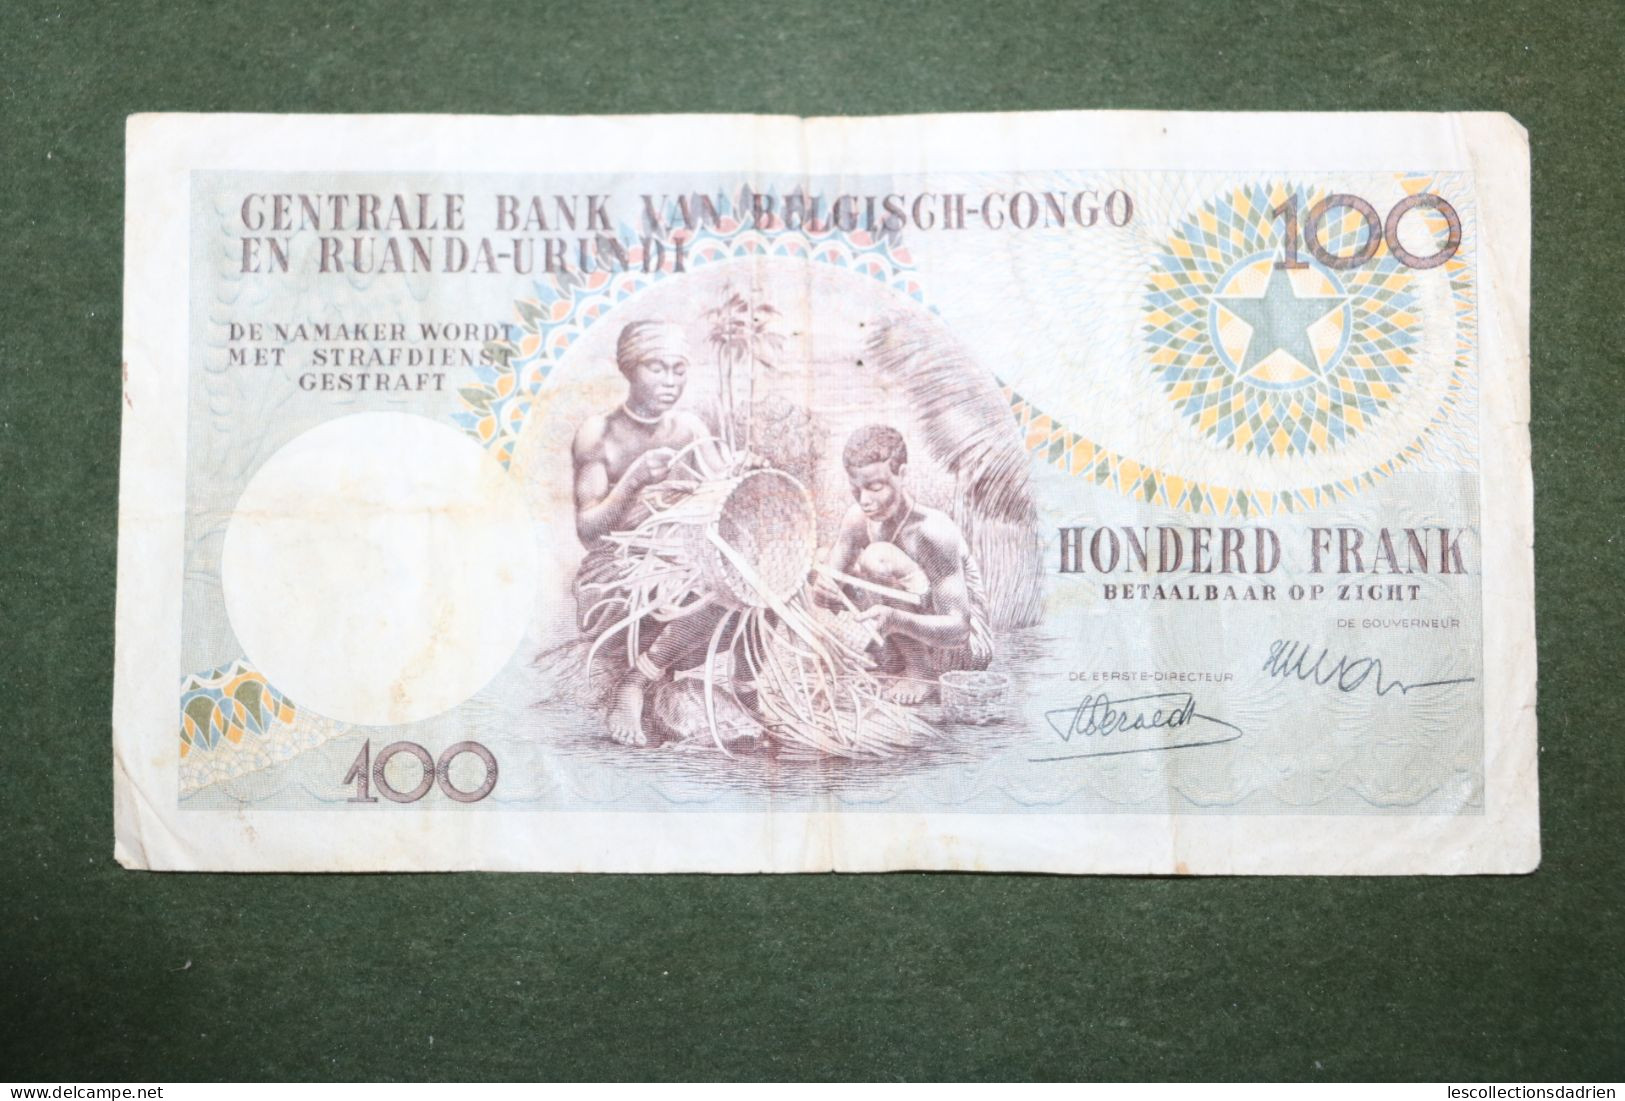 Billet de 100 francs Congo belge - 100 frank belgische Congo - Ruanda Urundi  1955 - banknote